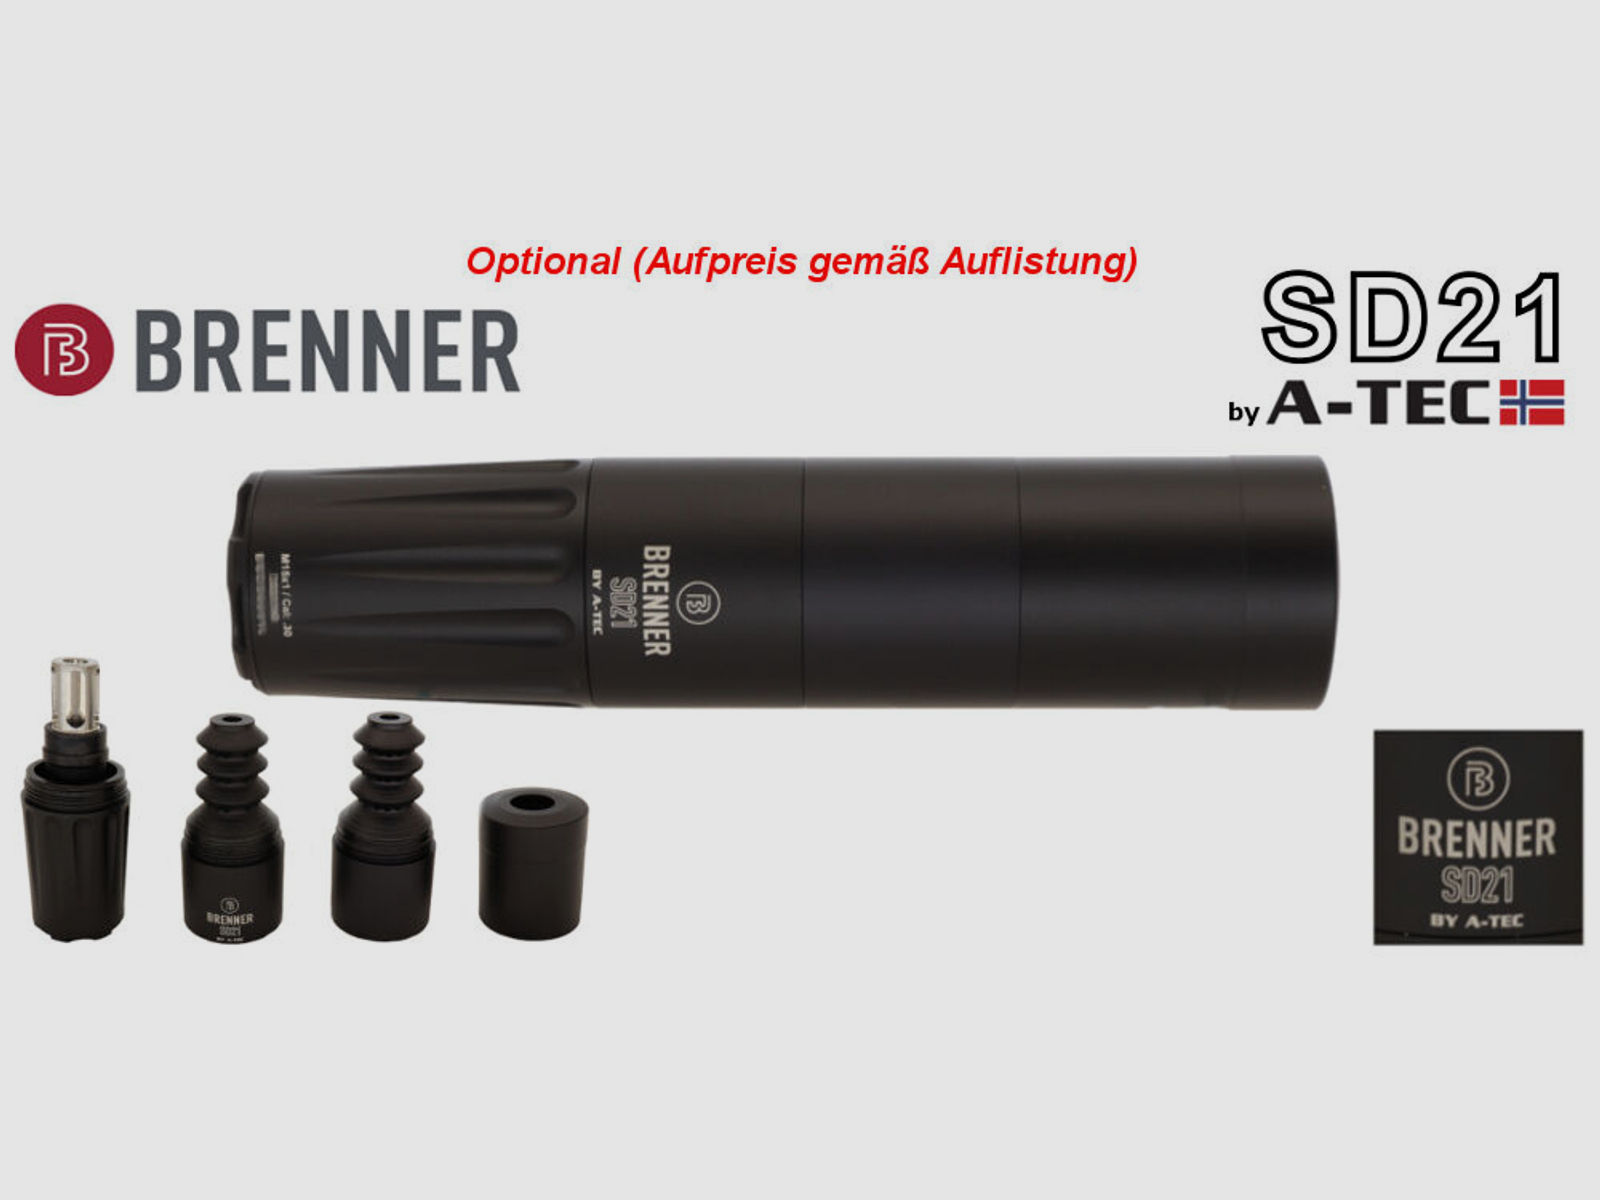 Brenner Komplettpaket:	 BR20 L.E. (Nussbaum, verstellbarer Schaftrücken / Limited Edition) mit Steiner Ranger 3-12x56